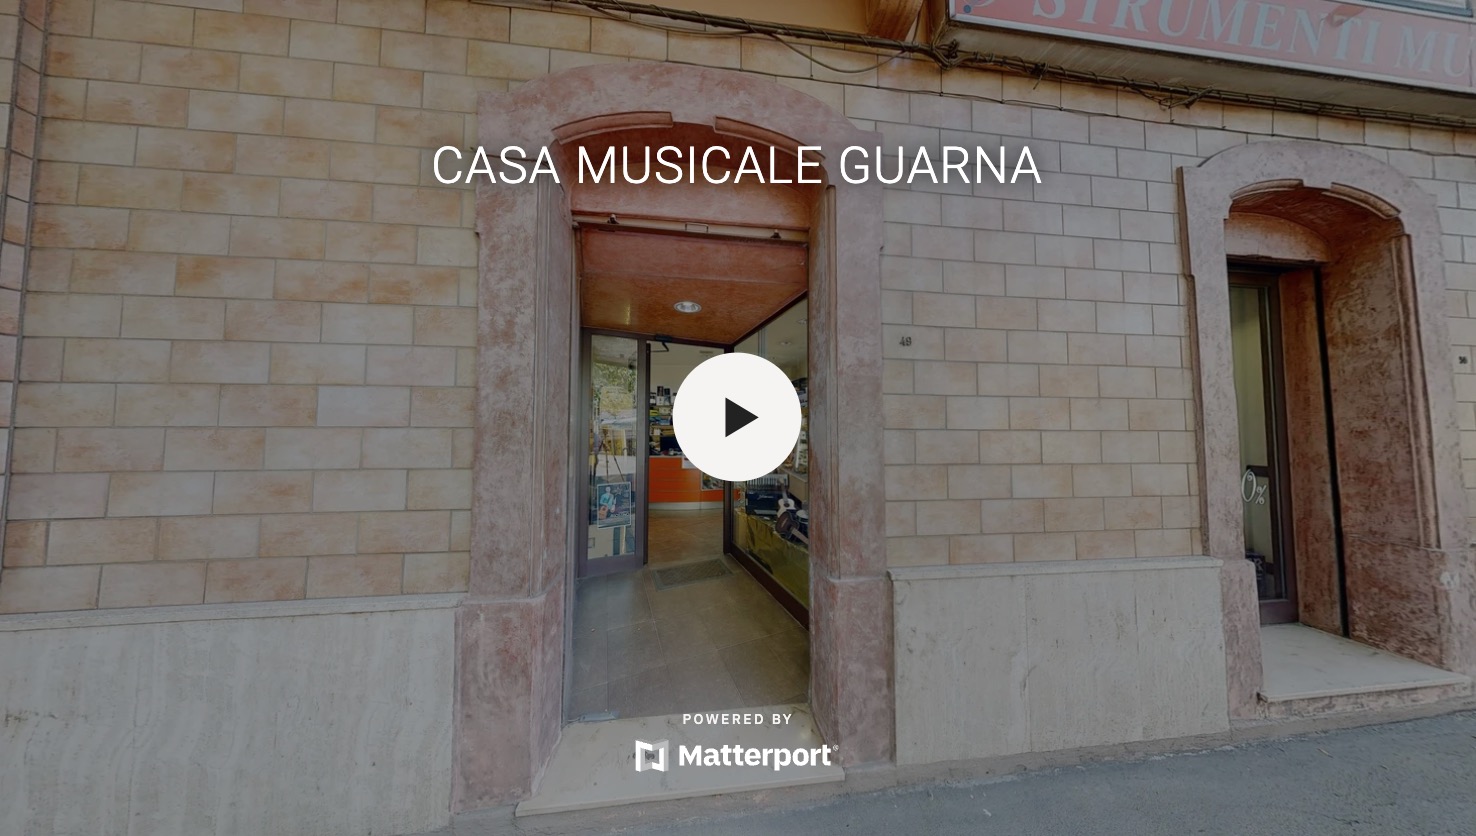 Casa Musicale Guarna